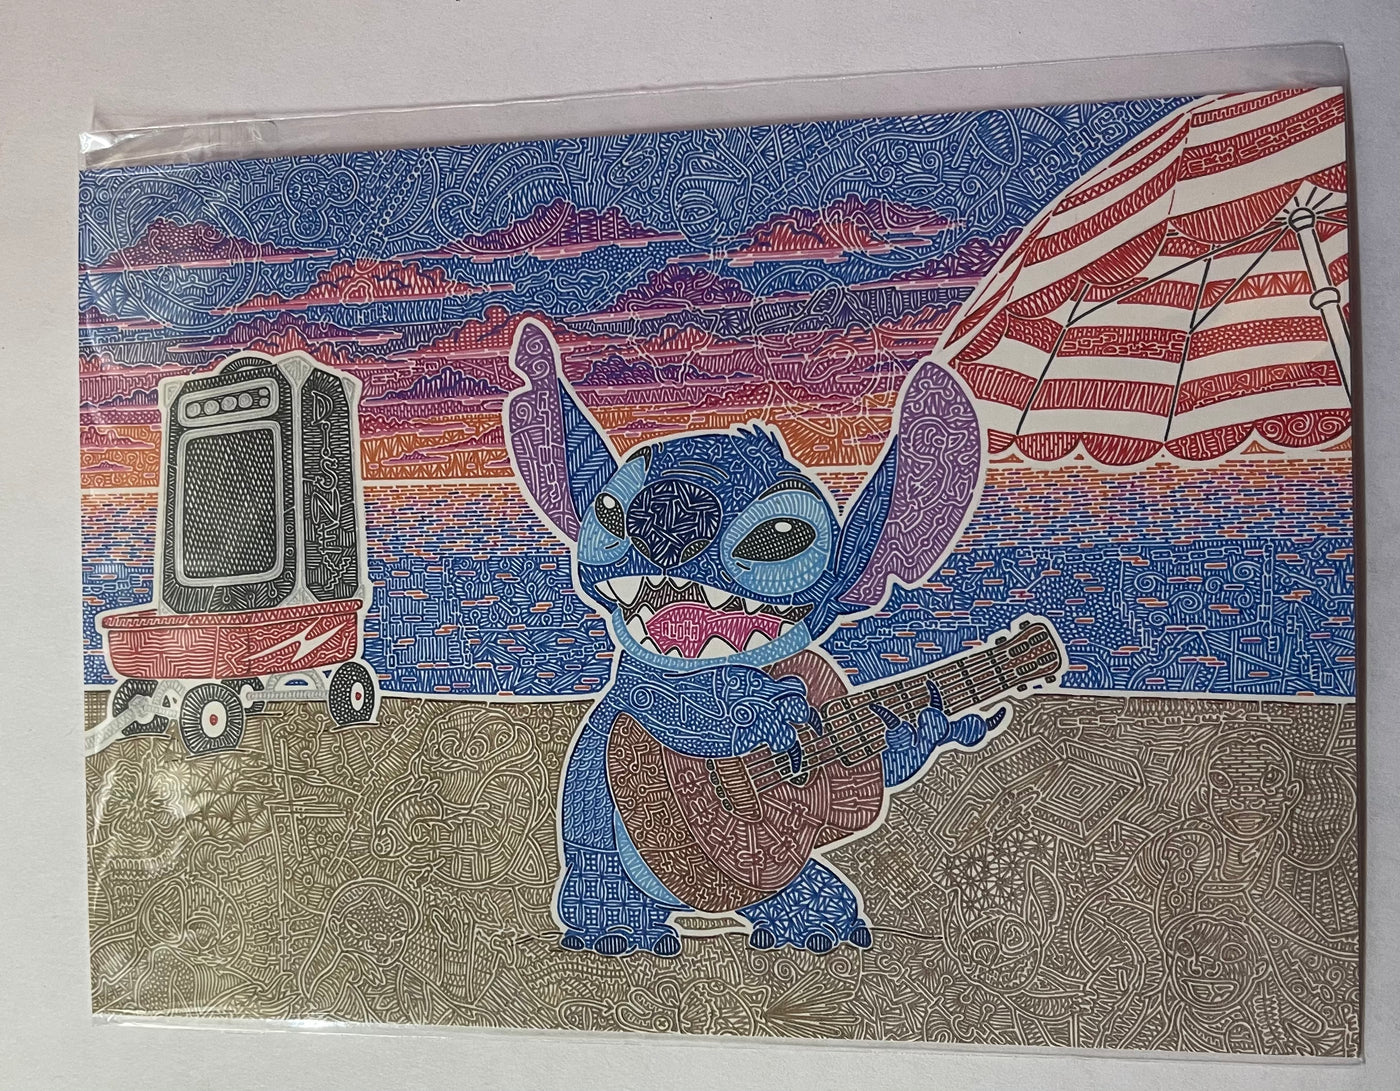 Disney Artist Stitch by Gregg Visintainer Postcard Wonderground Gallery New